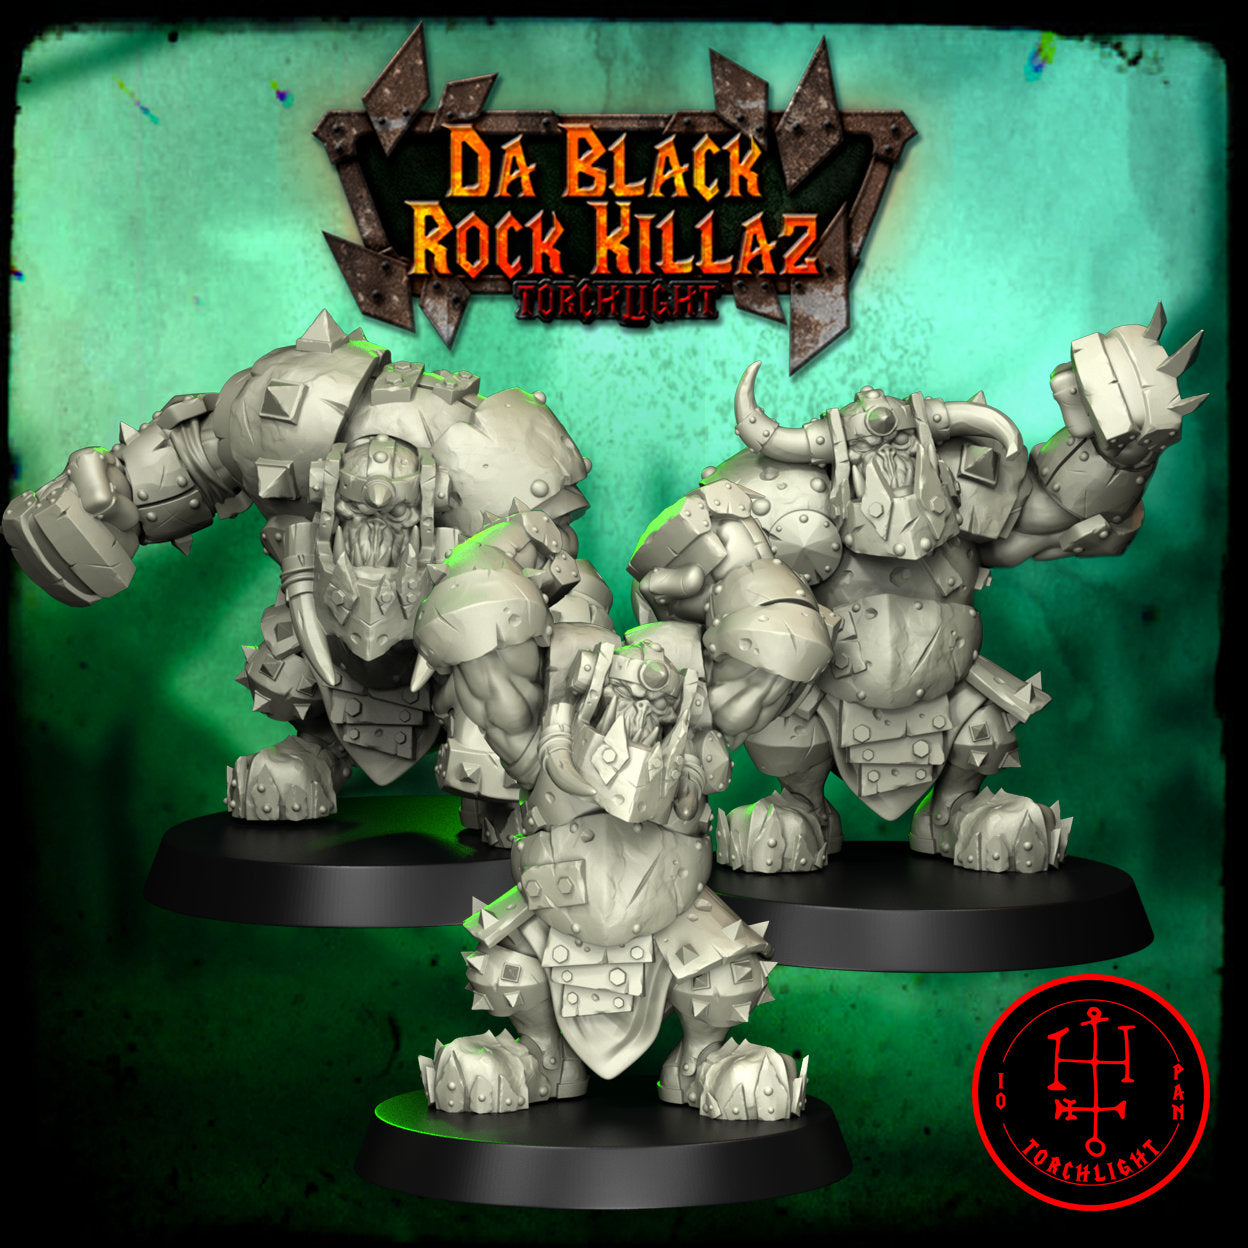 Da Black Rock Killas - Equipo de fútbol de fantasía Obsidian Orc - 15 jugadores - Modelos de antorchas